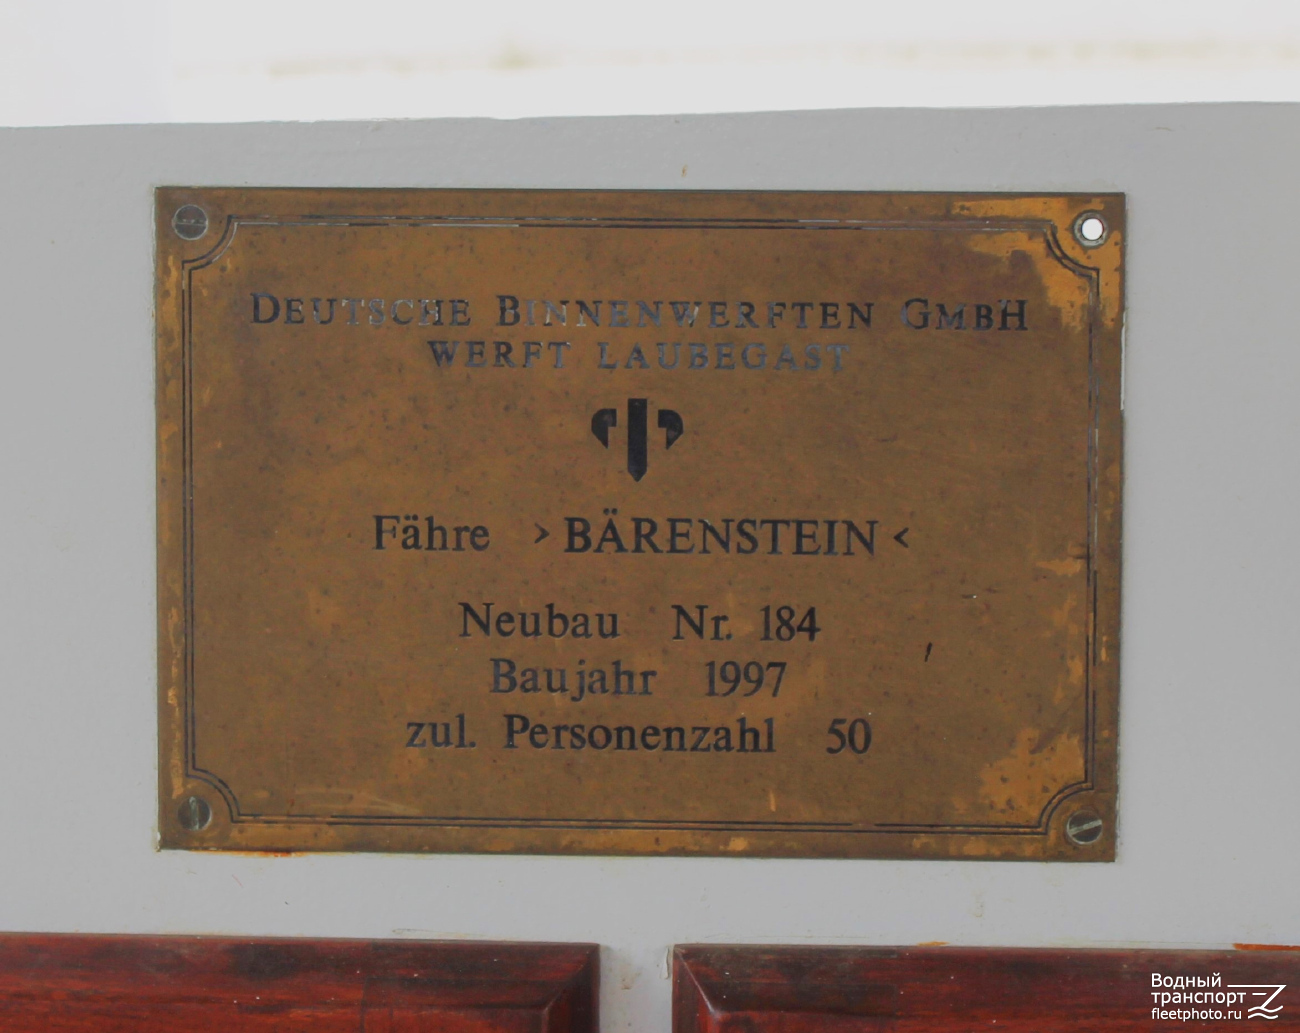 Bärenstein. Shipbuilder's Makers Plates